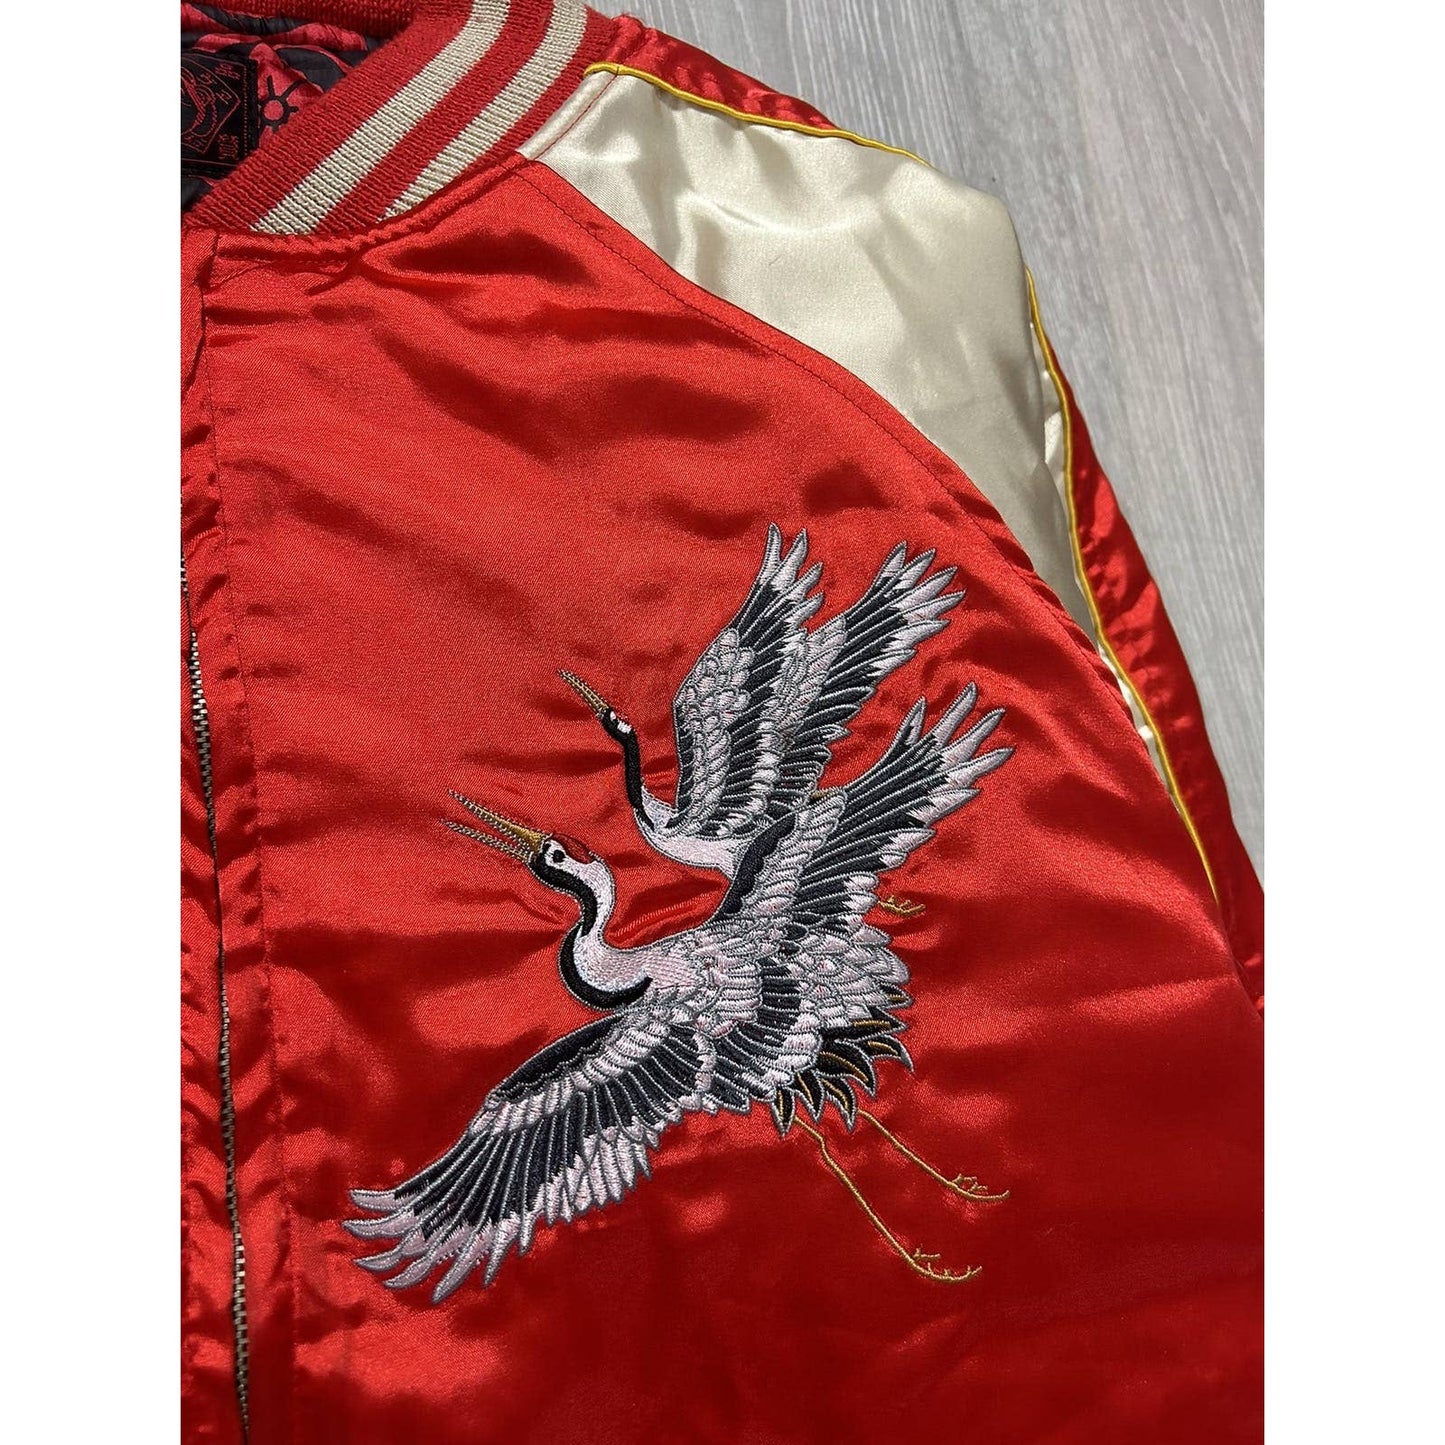 Evisu bomber jacket red birds Osaka Nippon